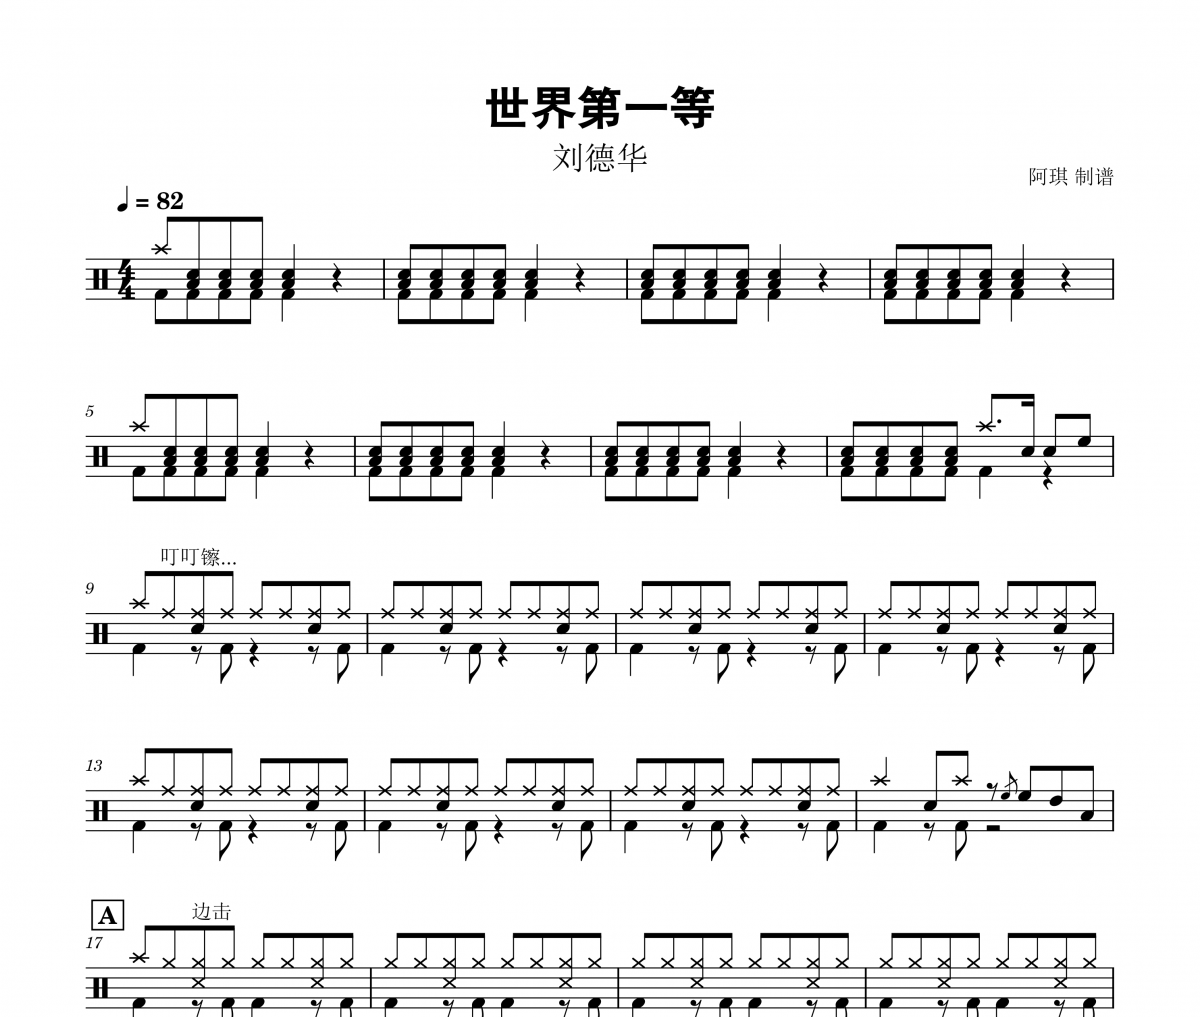 世界第一等鼓谱 刘德华-世界第一等爵士鼓谱+无鼓伴奏